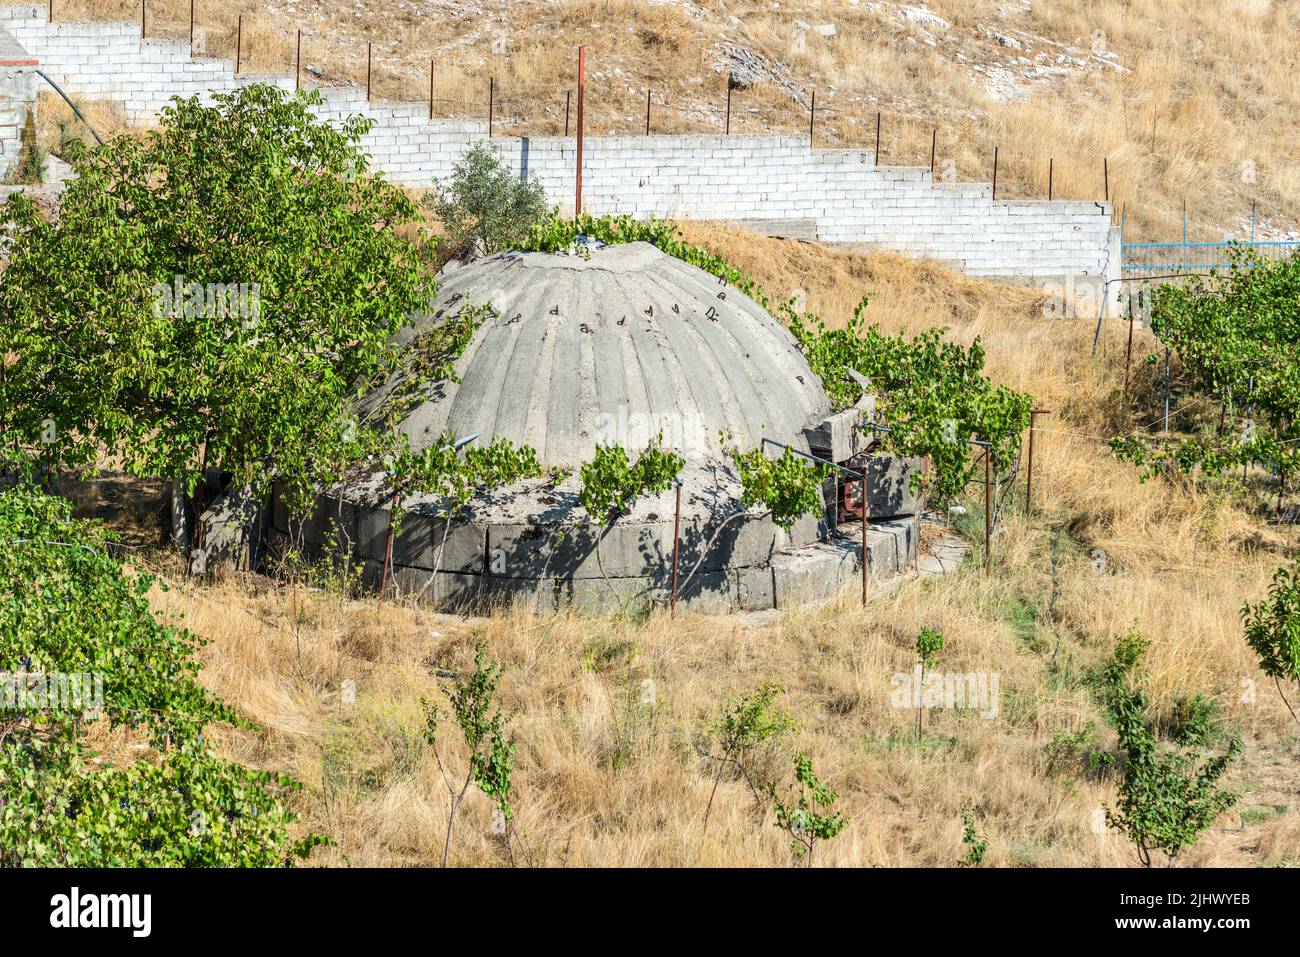 Jorgucat, Albania - 10 de septiembre de 2021: Búnker militar de hormigón en Albania. Los bunkers fueron construidos por durante la guerra fría por el dictador comunista w Foto de stock